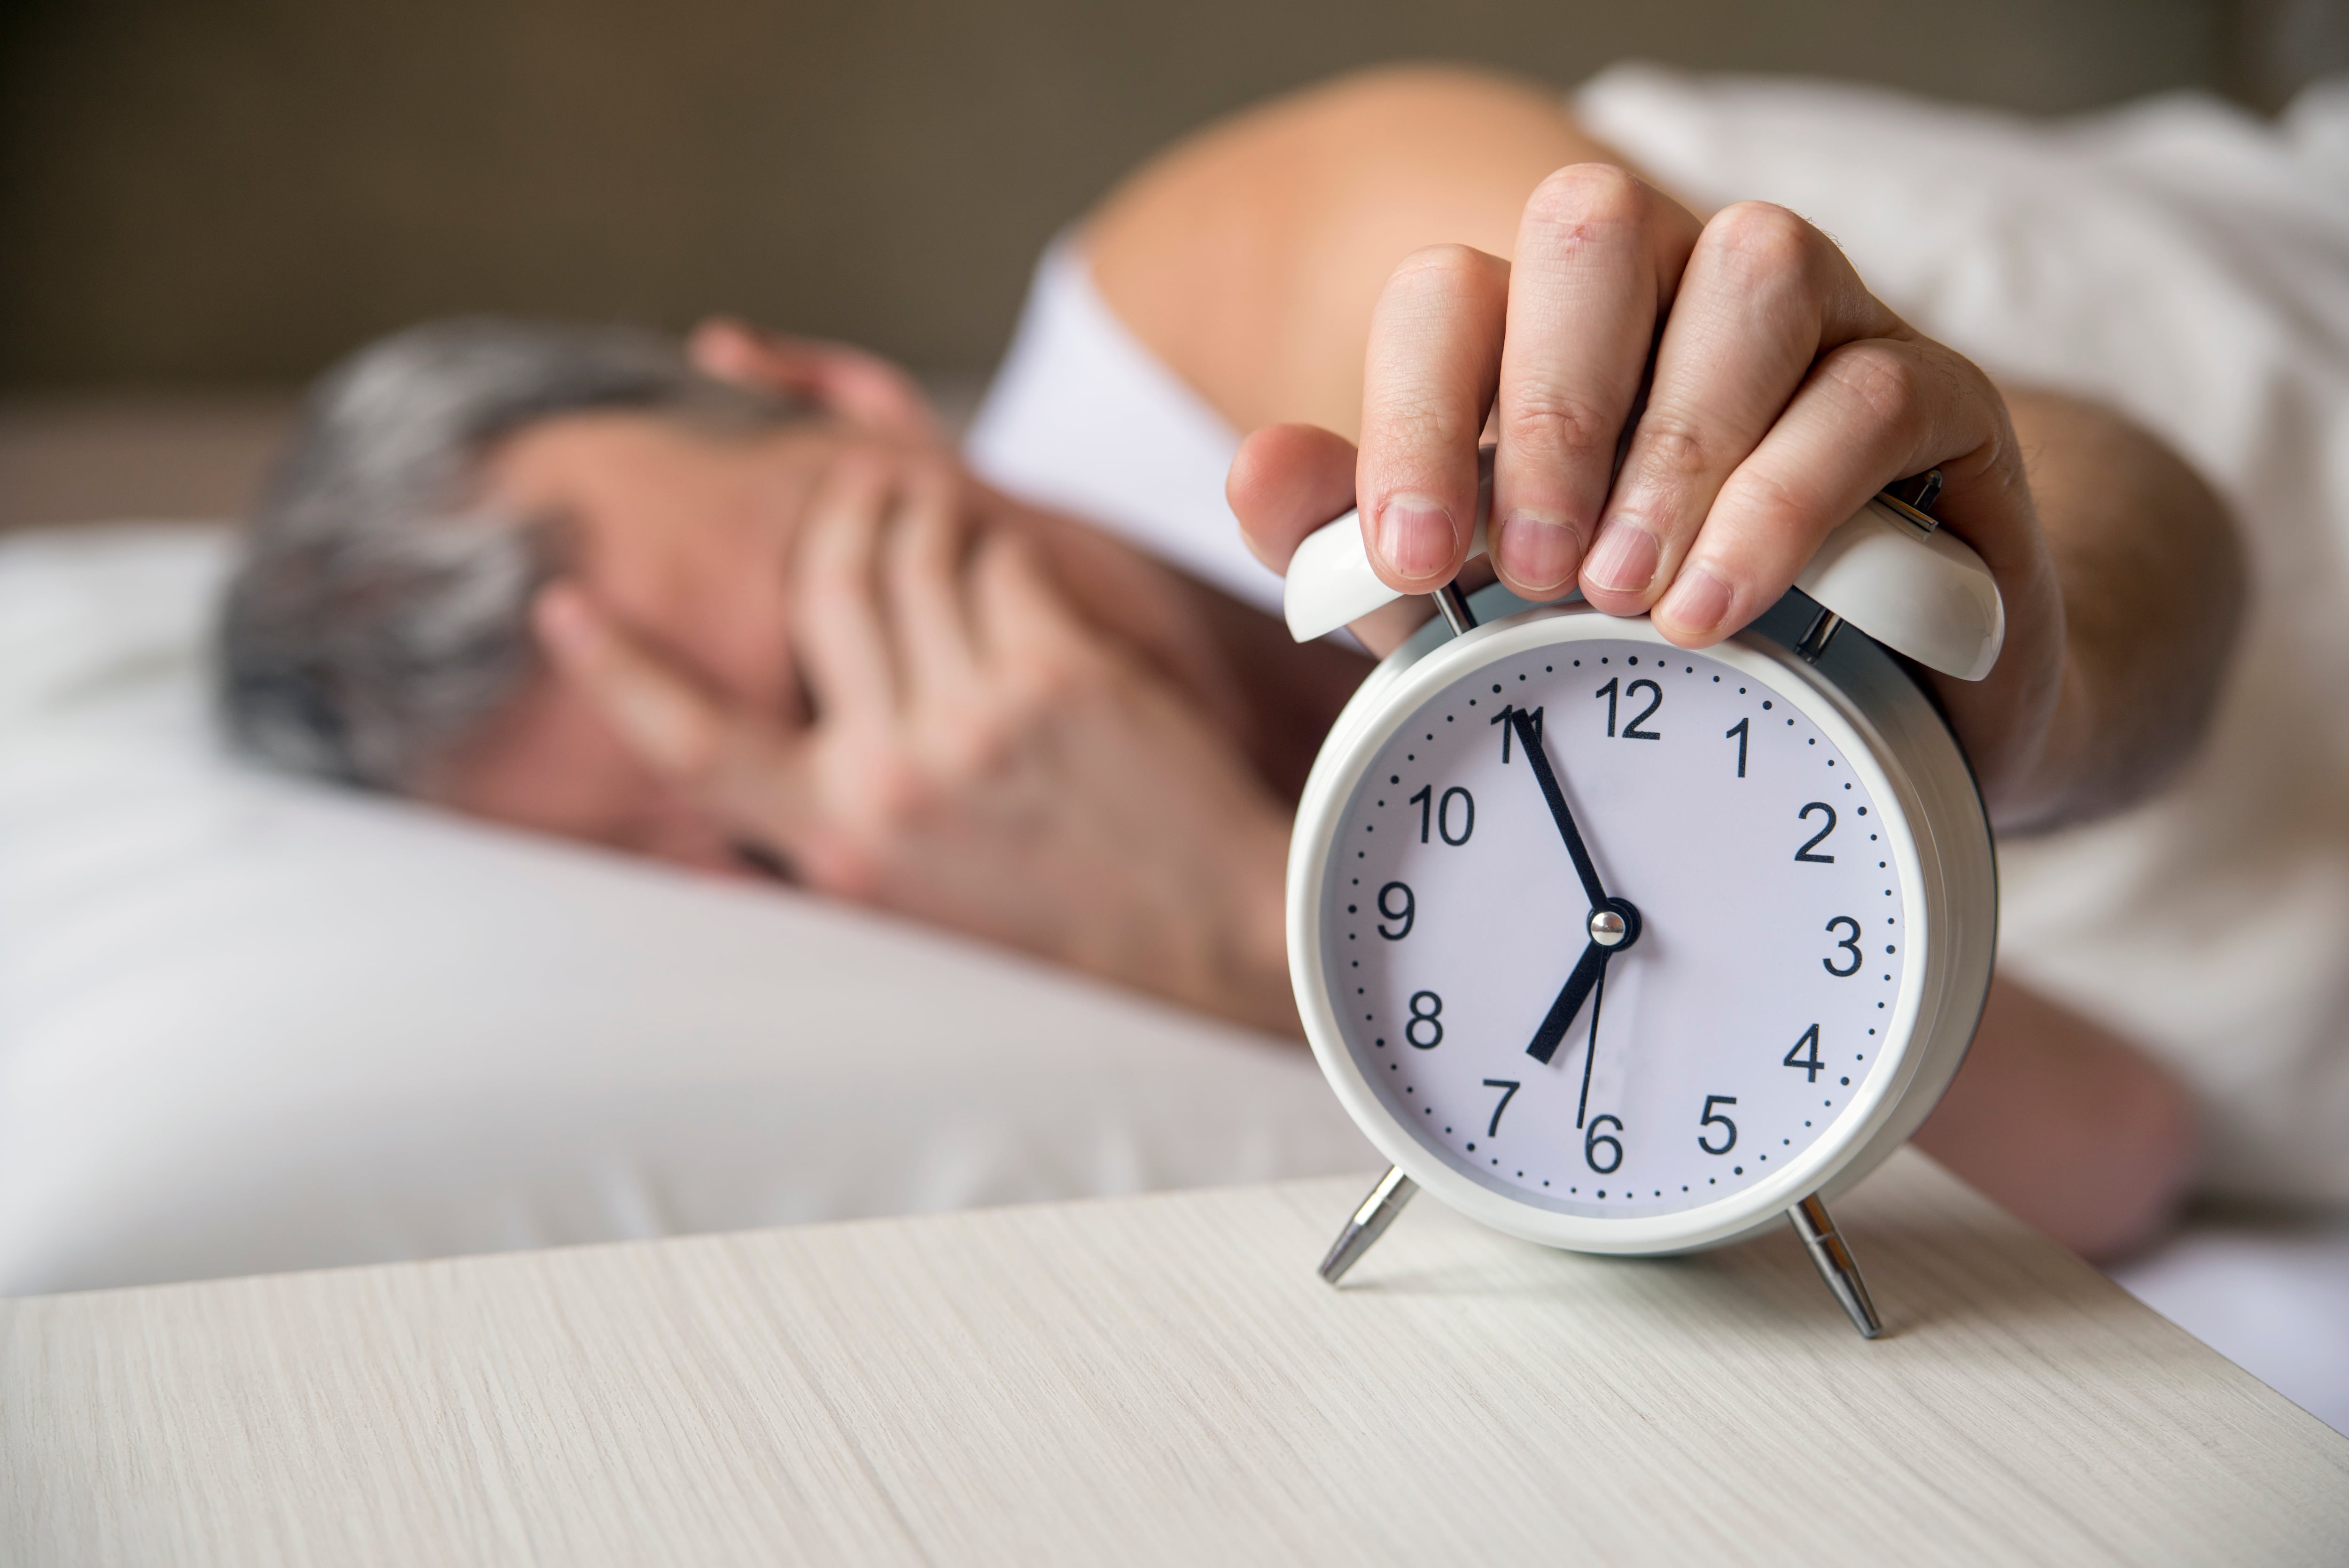 Una doctora estadounidense recomienda dejar de tomar cafeína 10 horas antes de irse a dormir.